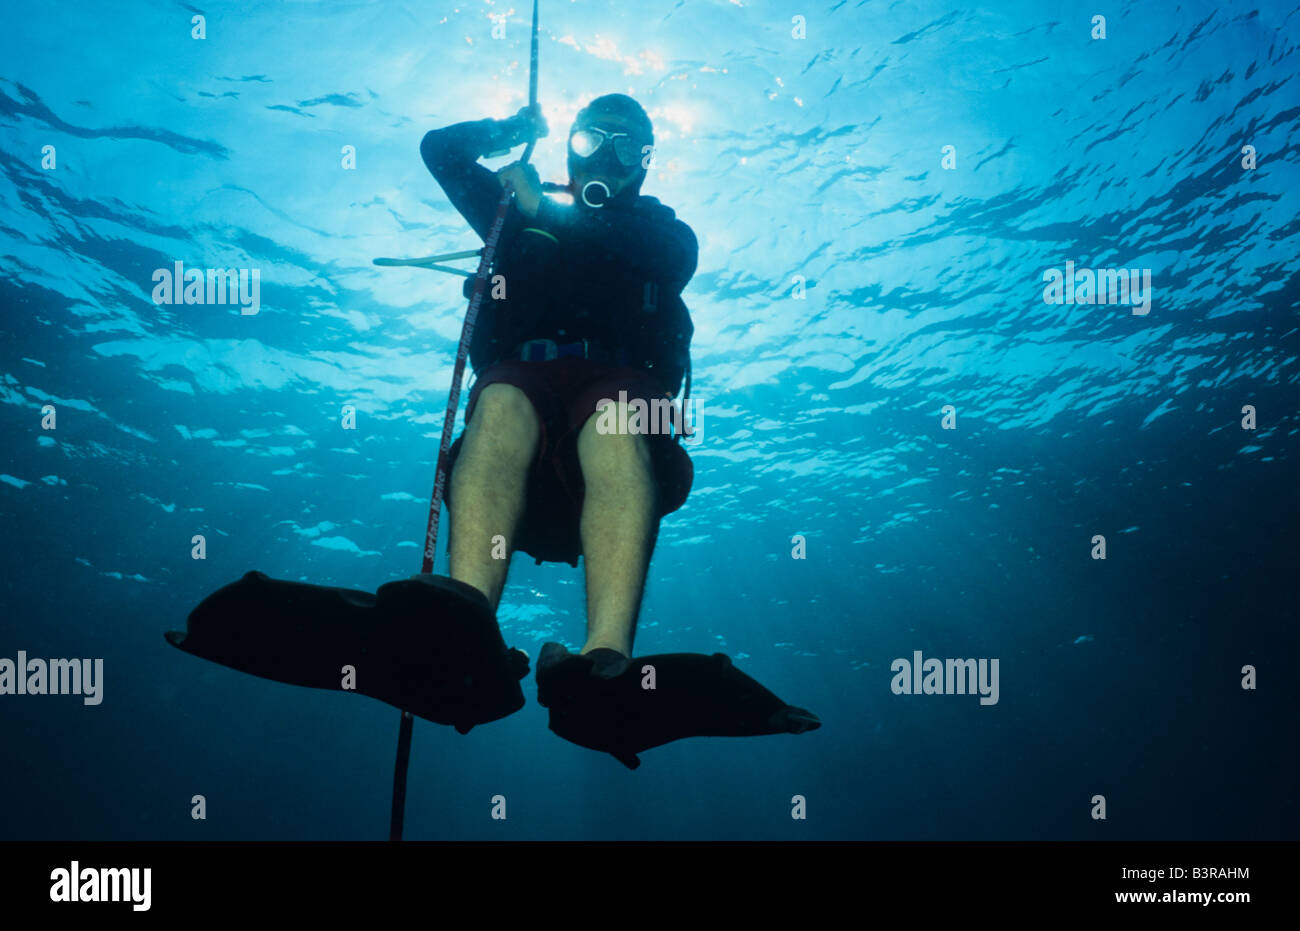 Guide de plongée, l'exercice de la butée de sécurité ci-dessous sa bouée de surface. Surin. La Thaïlande. Banque D'Images